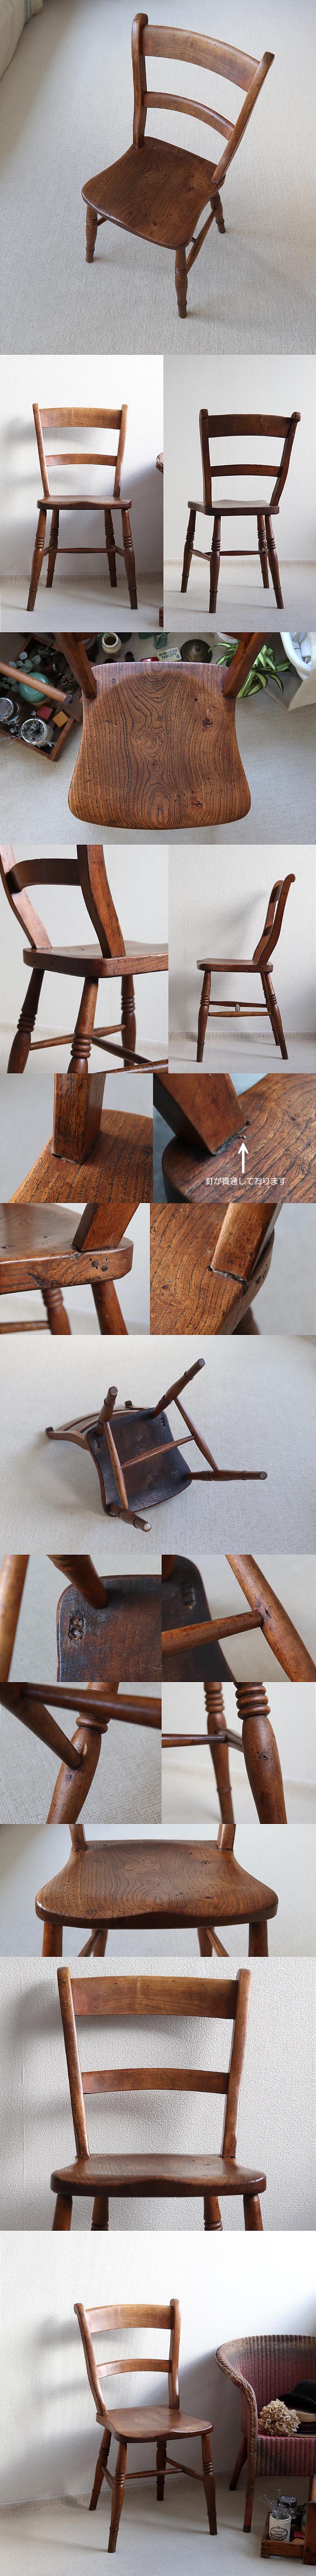 イギリス アンティーク バーバックチェア ダイニングチェア 木製椅子 カントリー 家具「一枚板座面」T-901